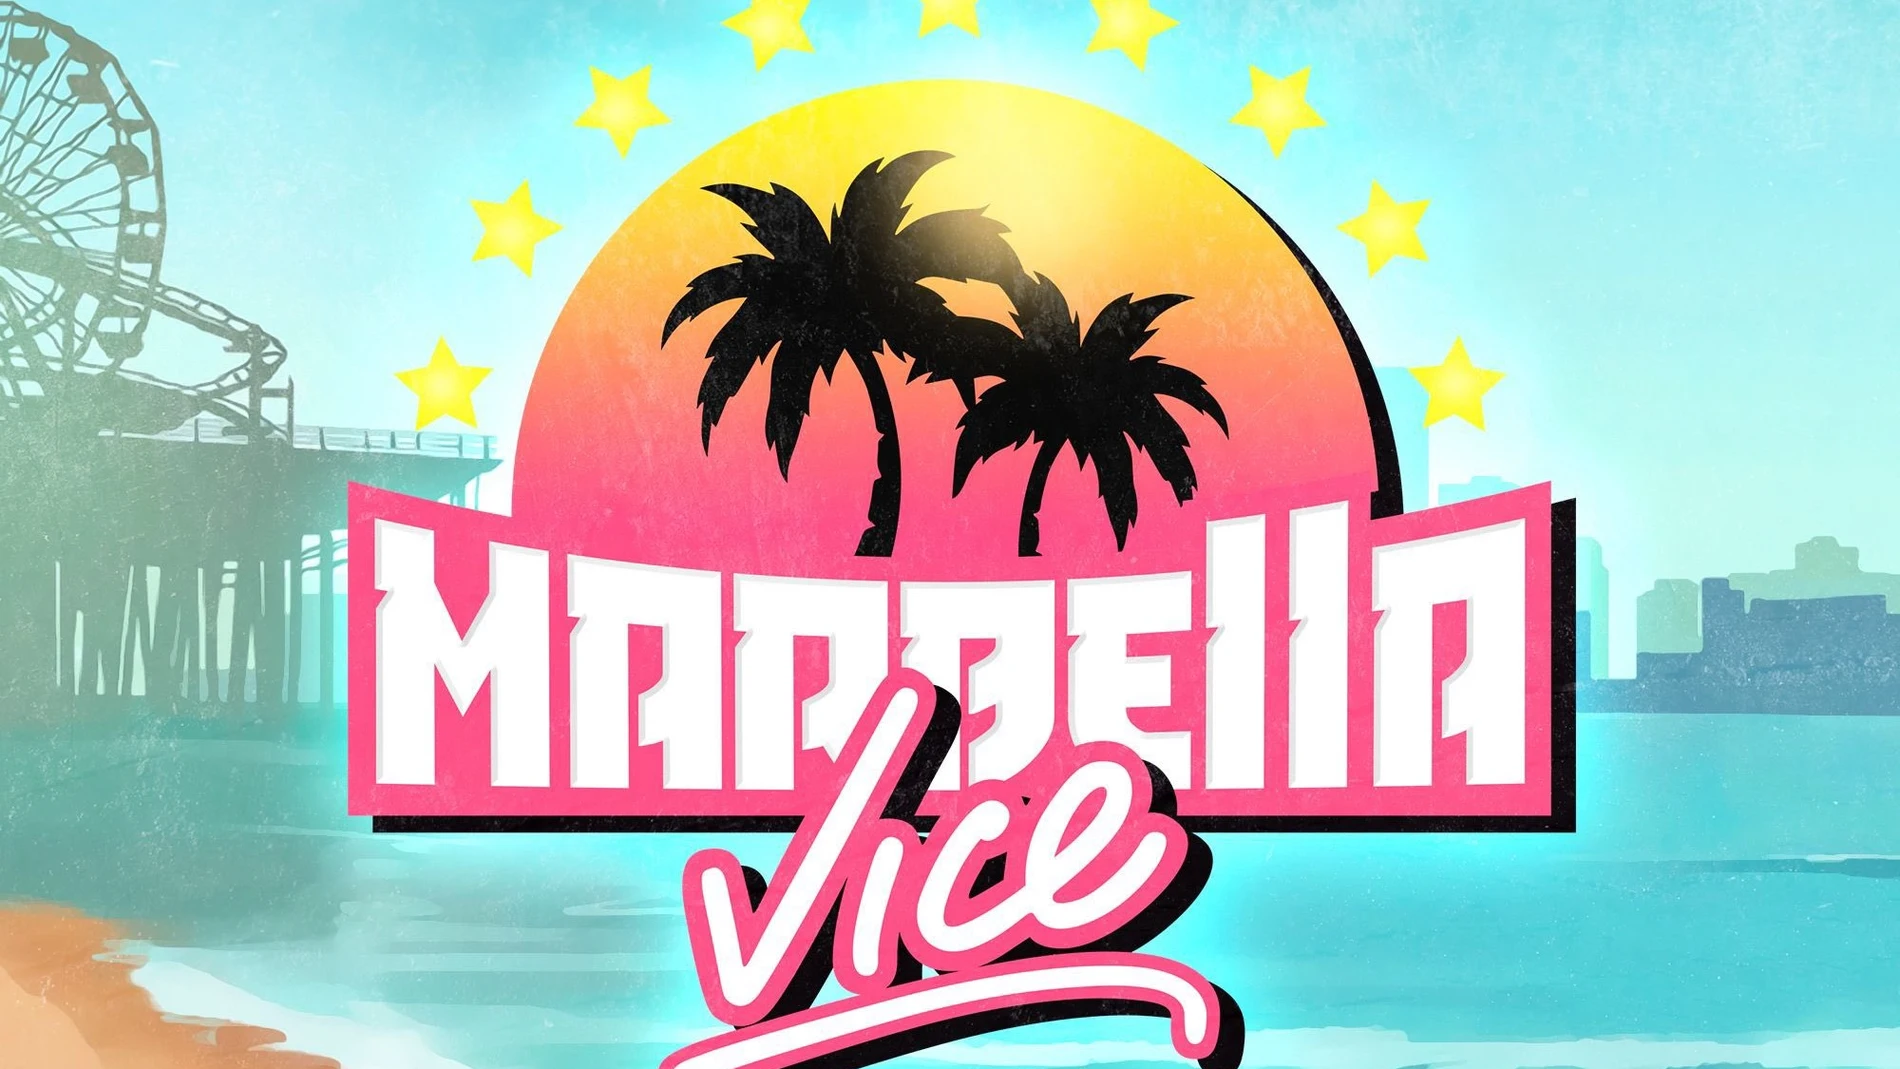 Marbella Vice será el nuevo servidor de GTA V